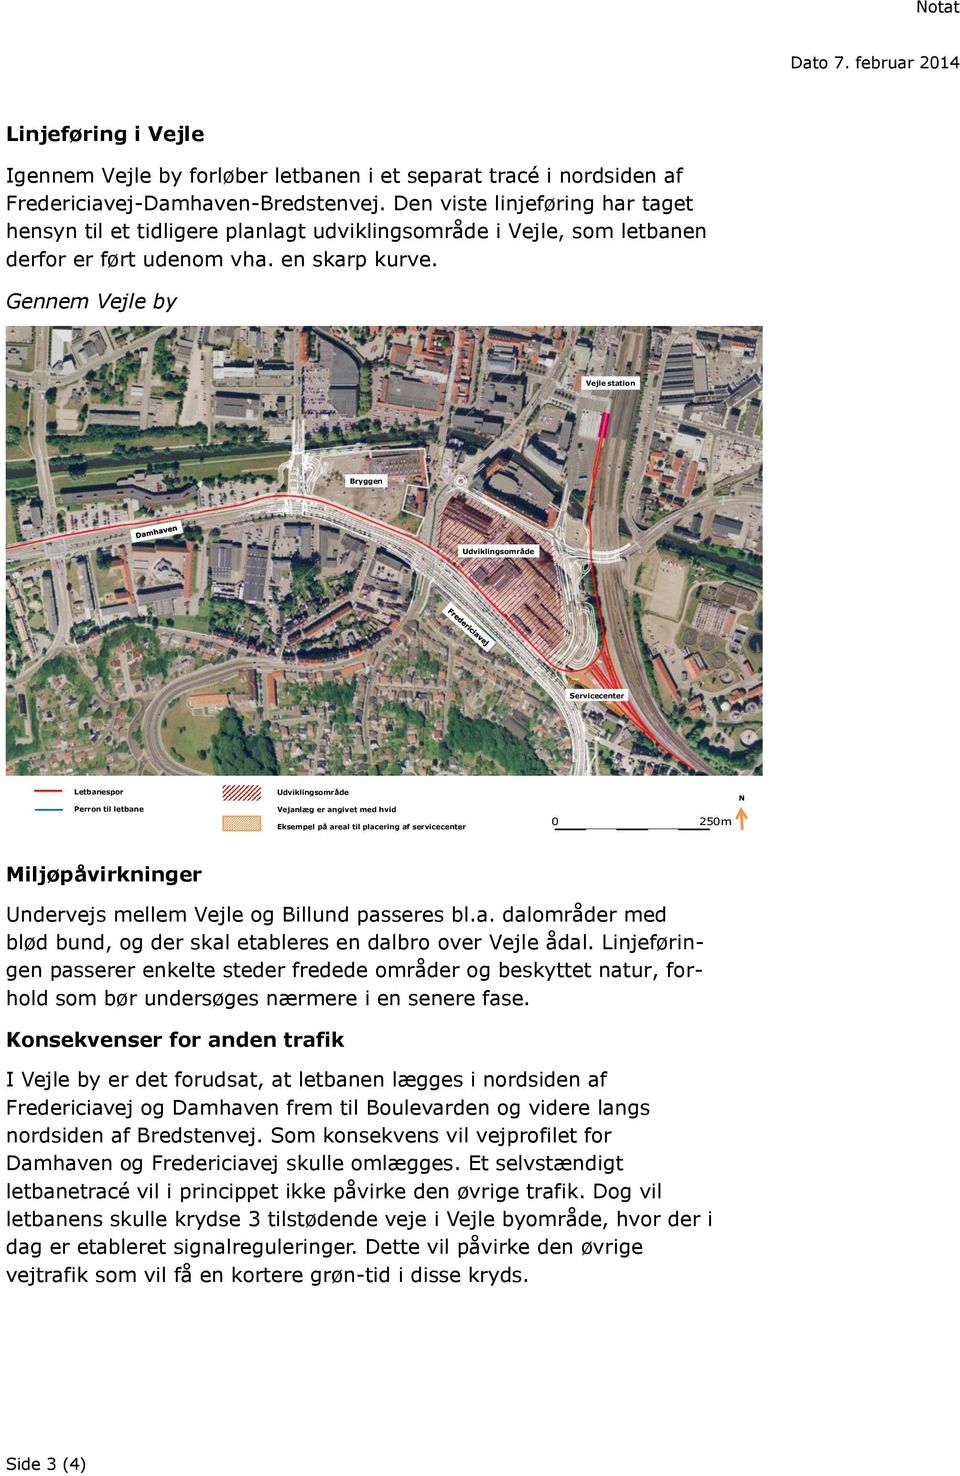 Gennem Vejle by Vejle station Bryggen Udviklingsområde Servicecenter Letbanespor Perron til letbane Udviklingsområde Vejanlæg er angivet med hvid Eksempel på areal til placering af servicecenter 0